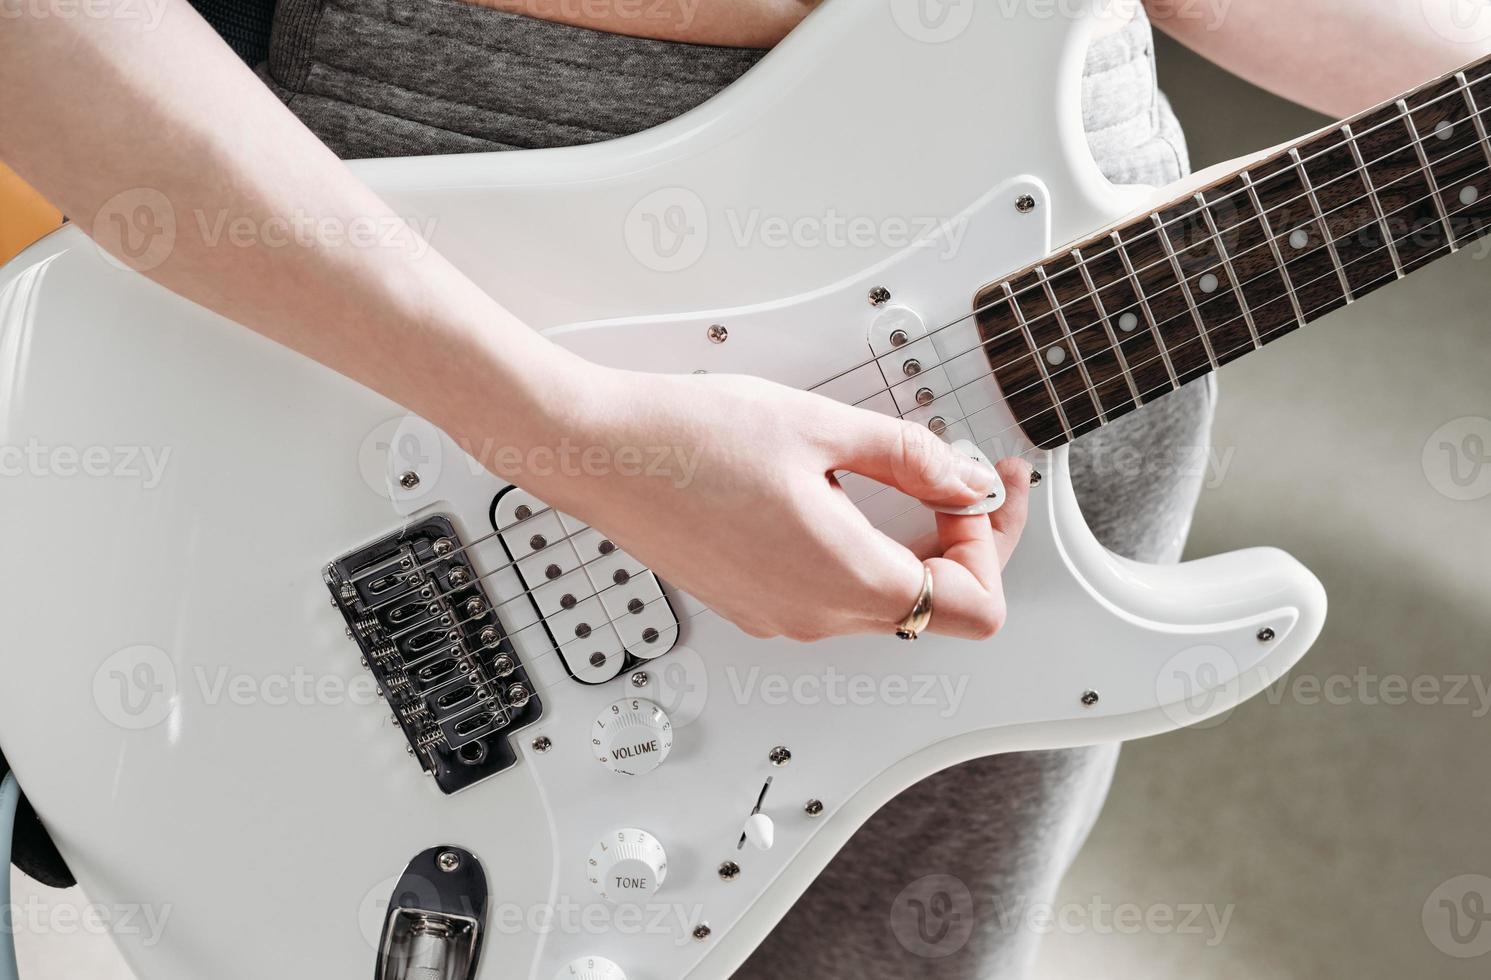 vrouwelijke artiest die elektrische gitaar speelt en een lied uitvoert. weergave bijsnijden. vrouw met witte gitaar die thuis repeteert. muziek als hobby en creatieve vrijetijdsbesteding. foto